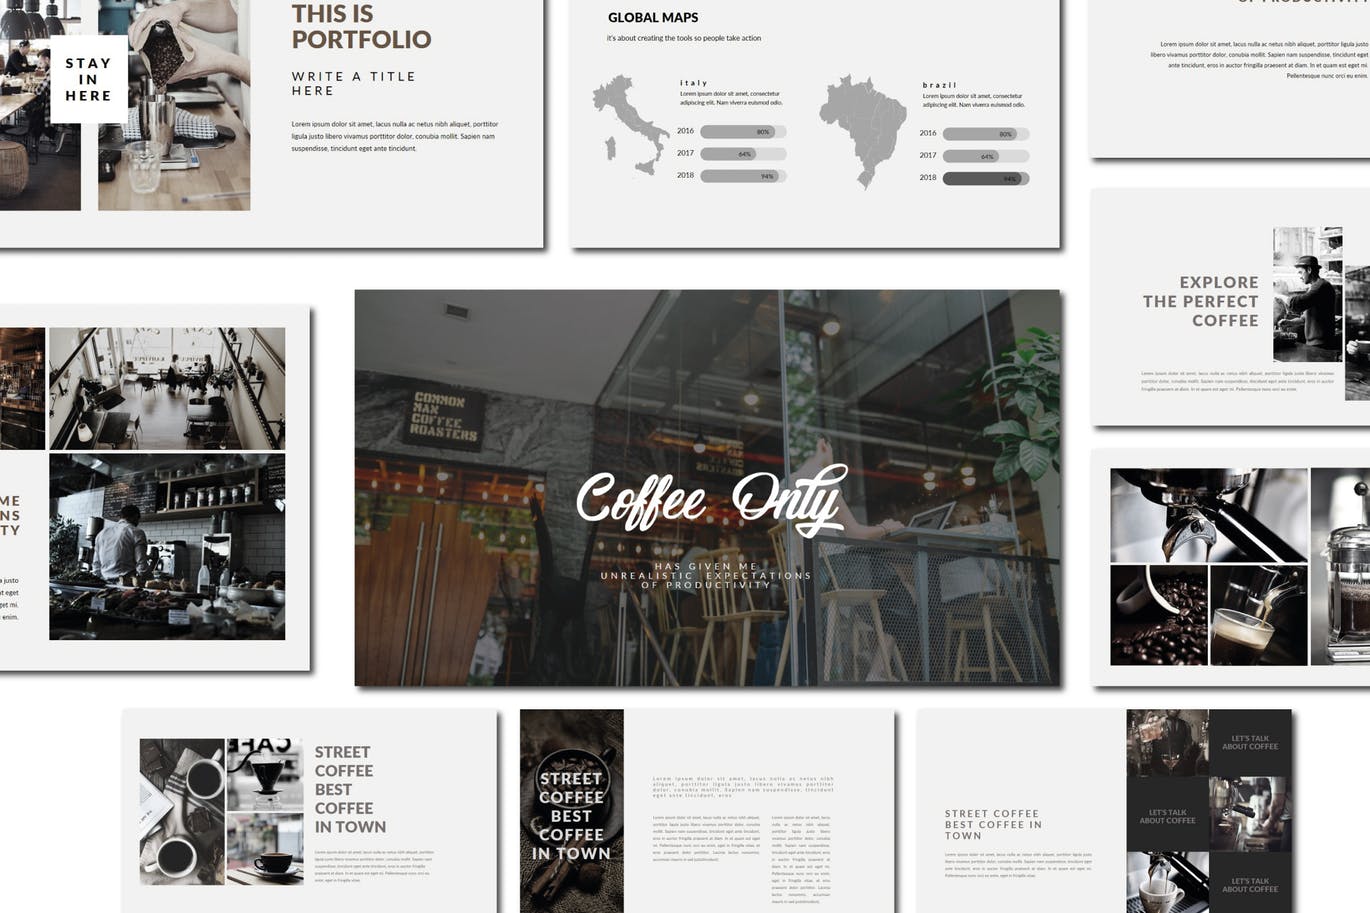 咖啡品牌/咖啡店策划方案蚂蚁素材精选PPT模板 Coffee | Powerpoint Template插图